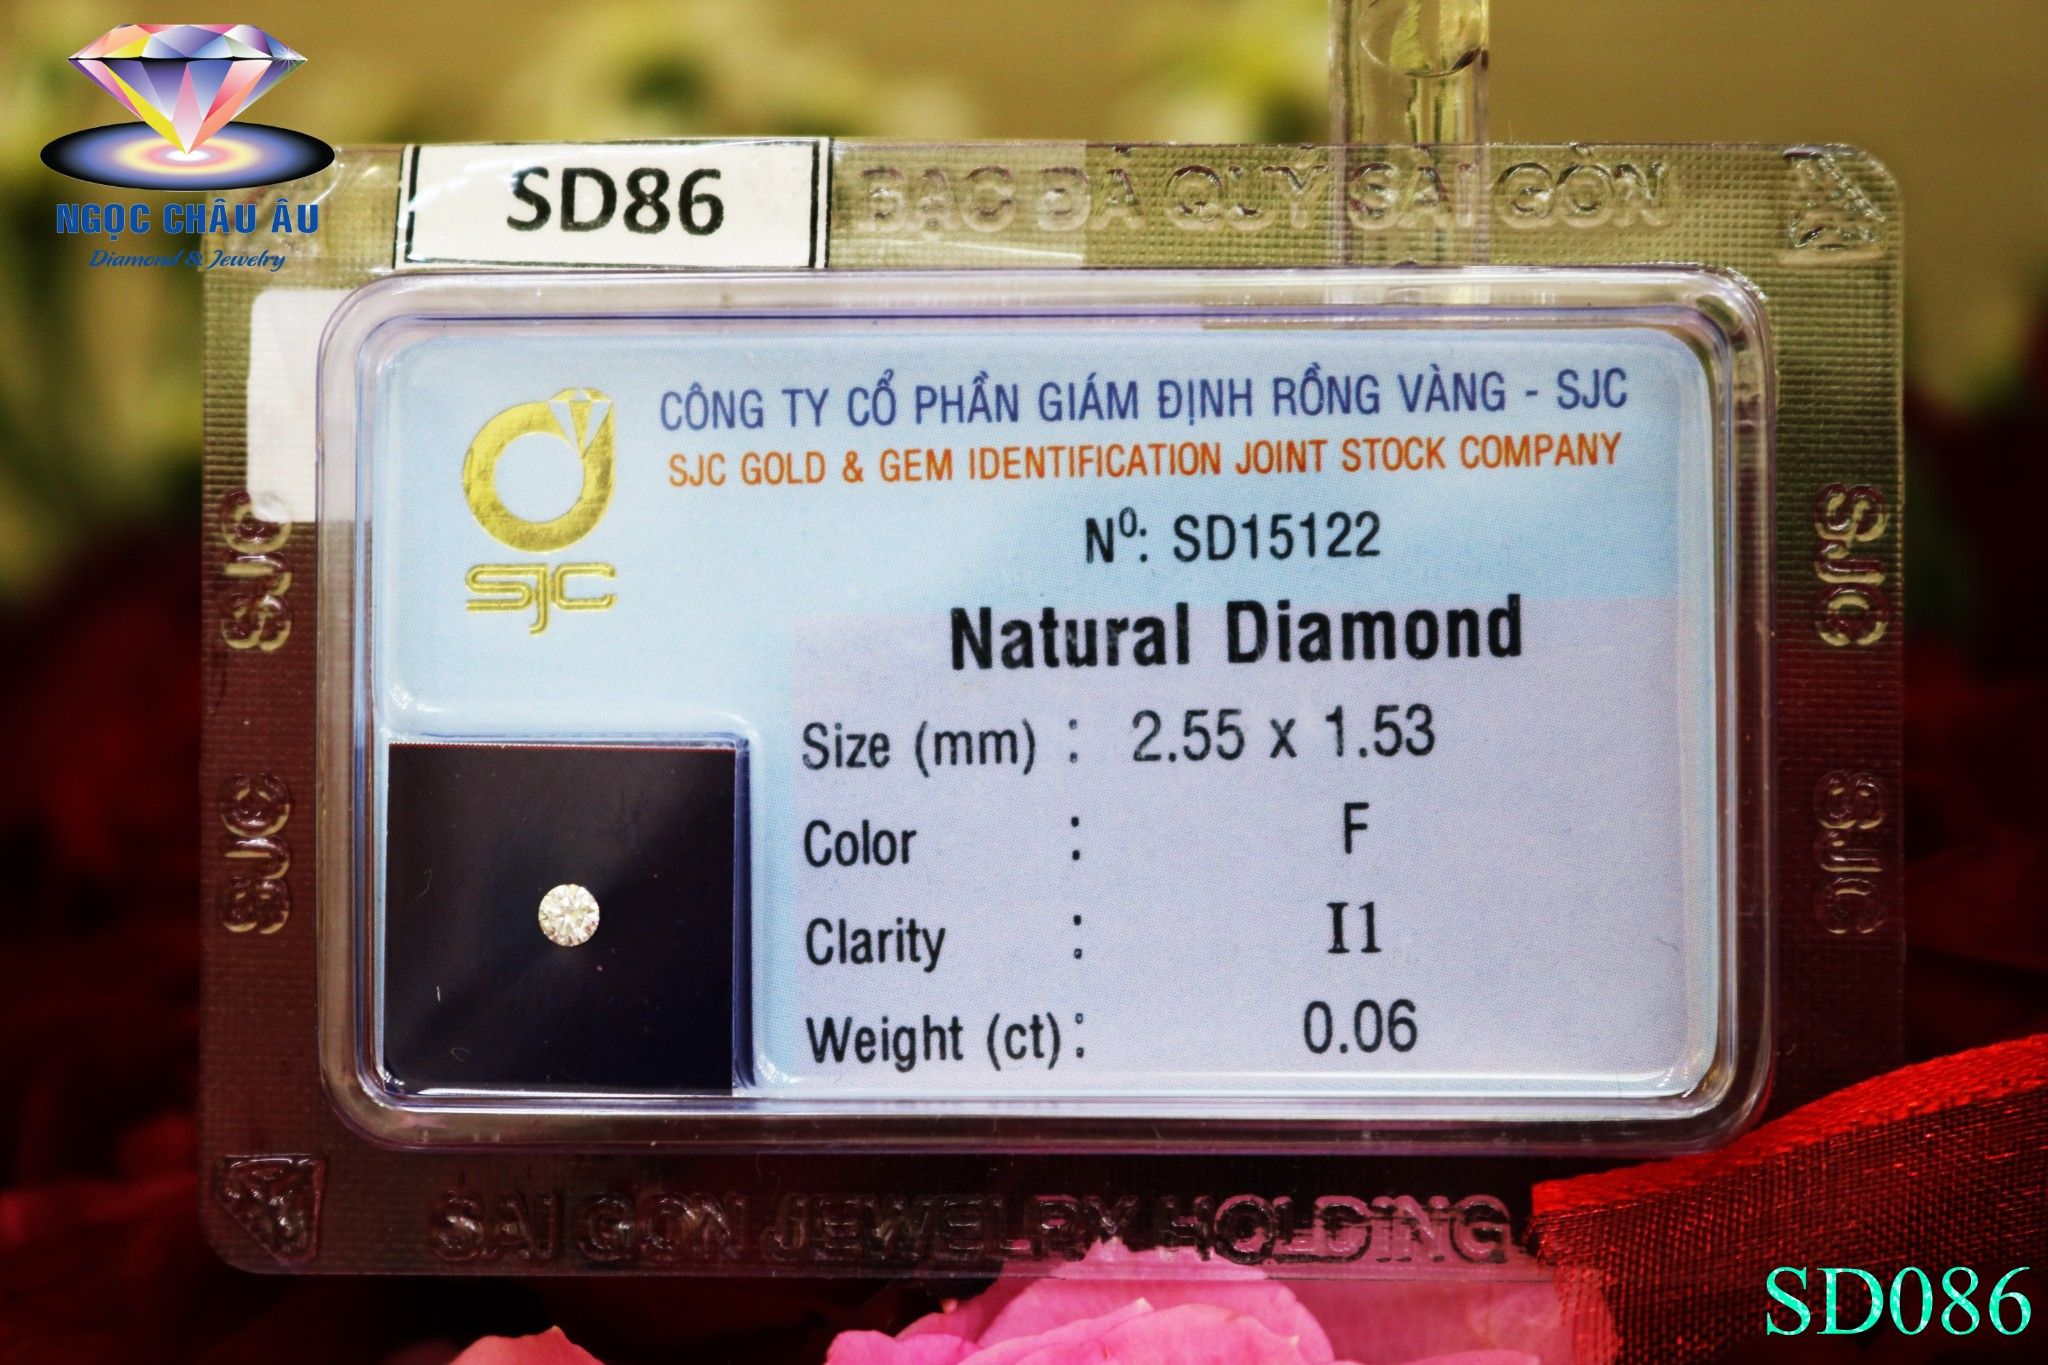  SD86-Kim Cương Thiên Nhiên 2.55x1.53mm; 0.06ct; F/I1 (SJC SD015122) 